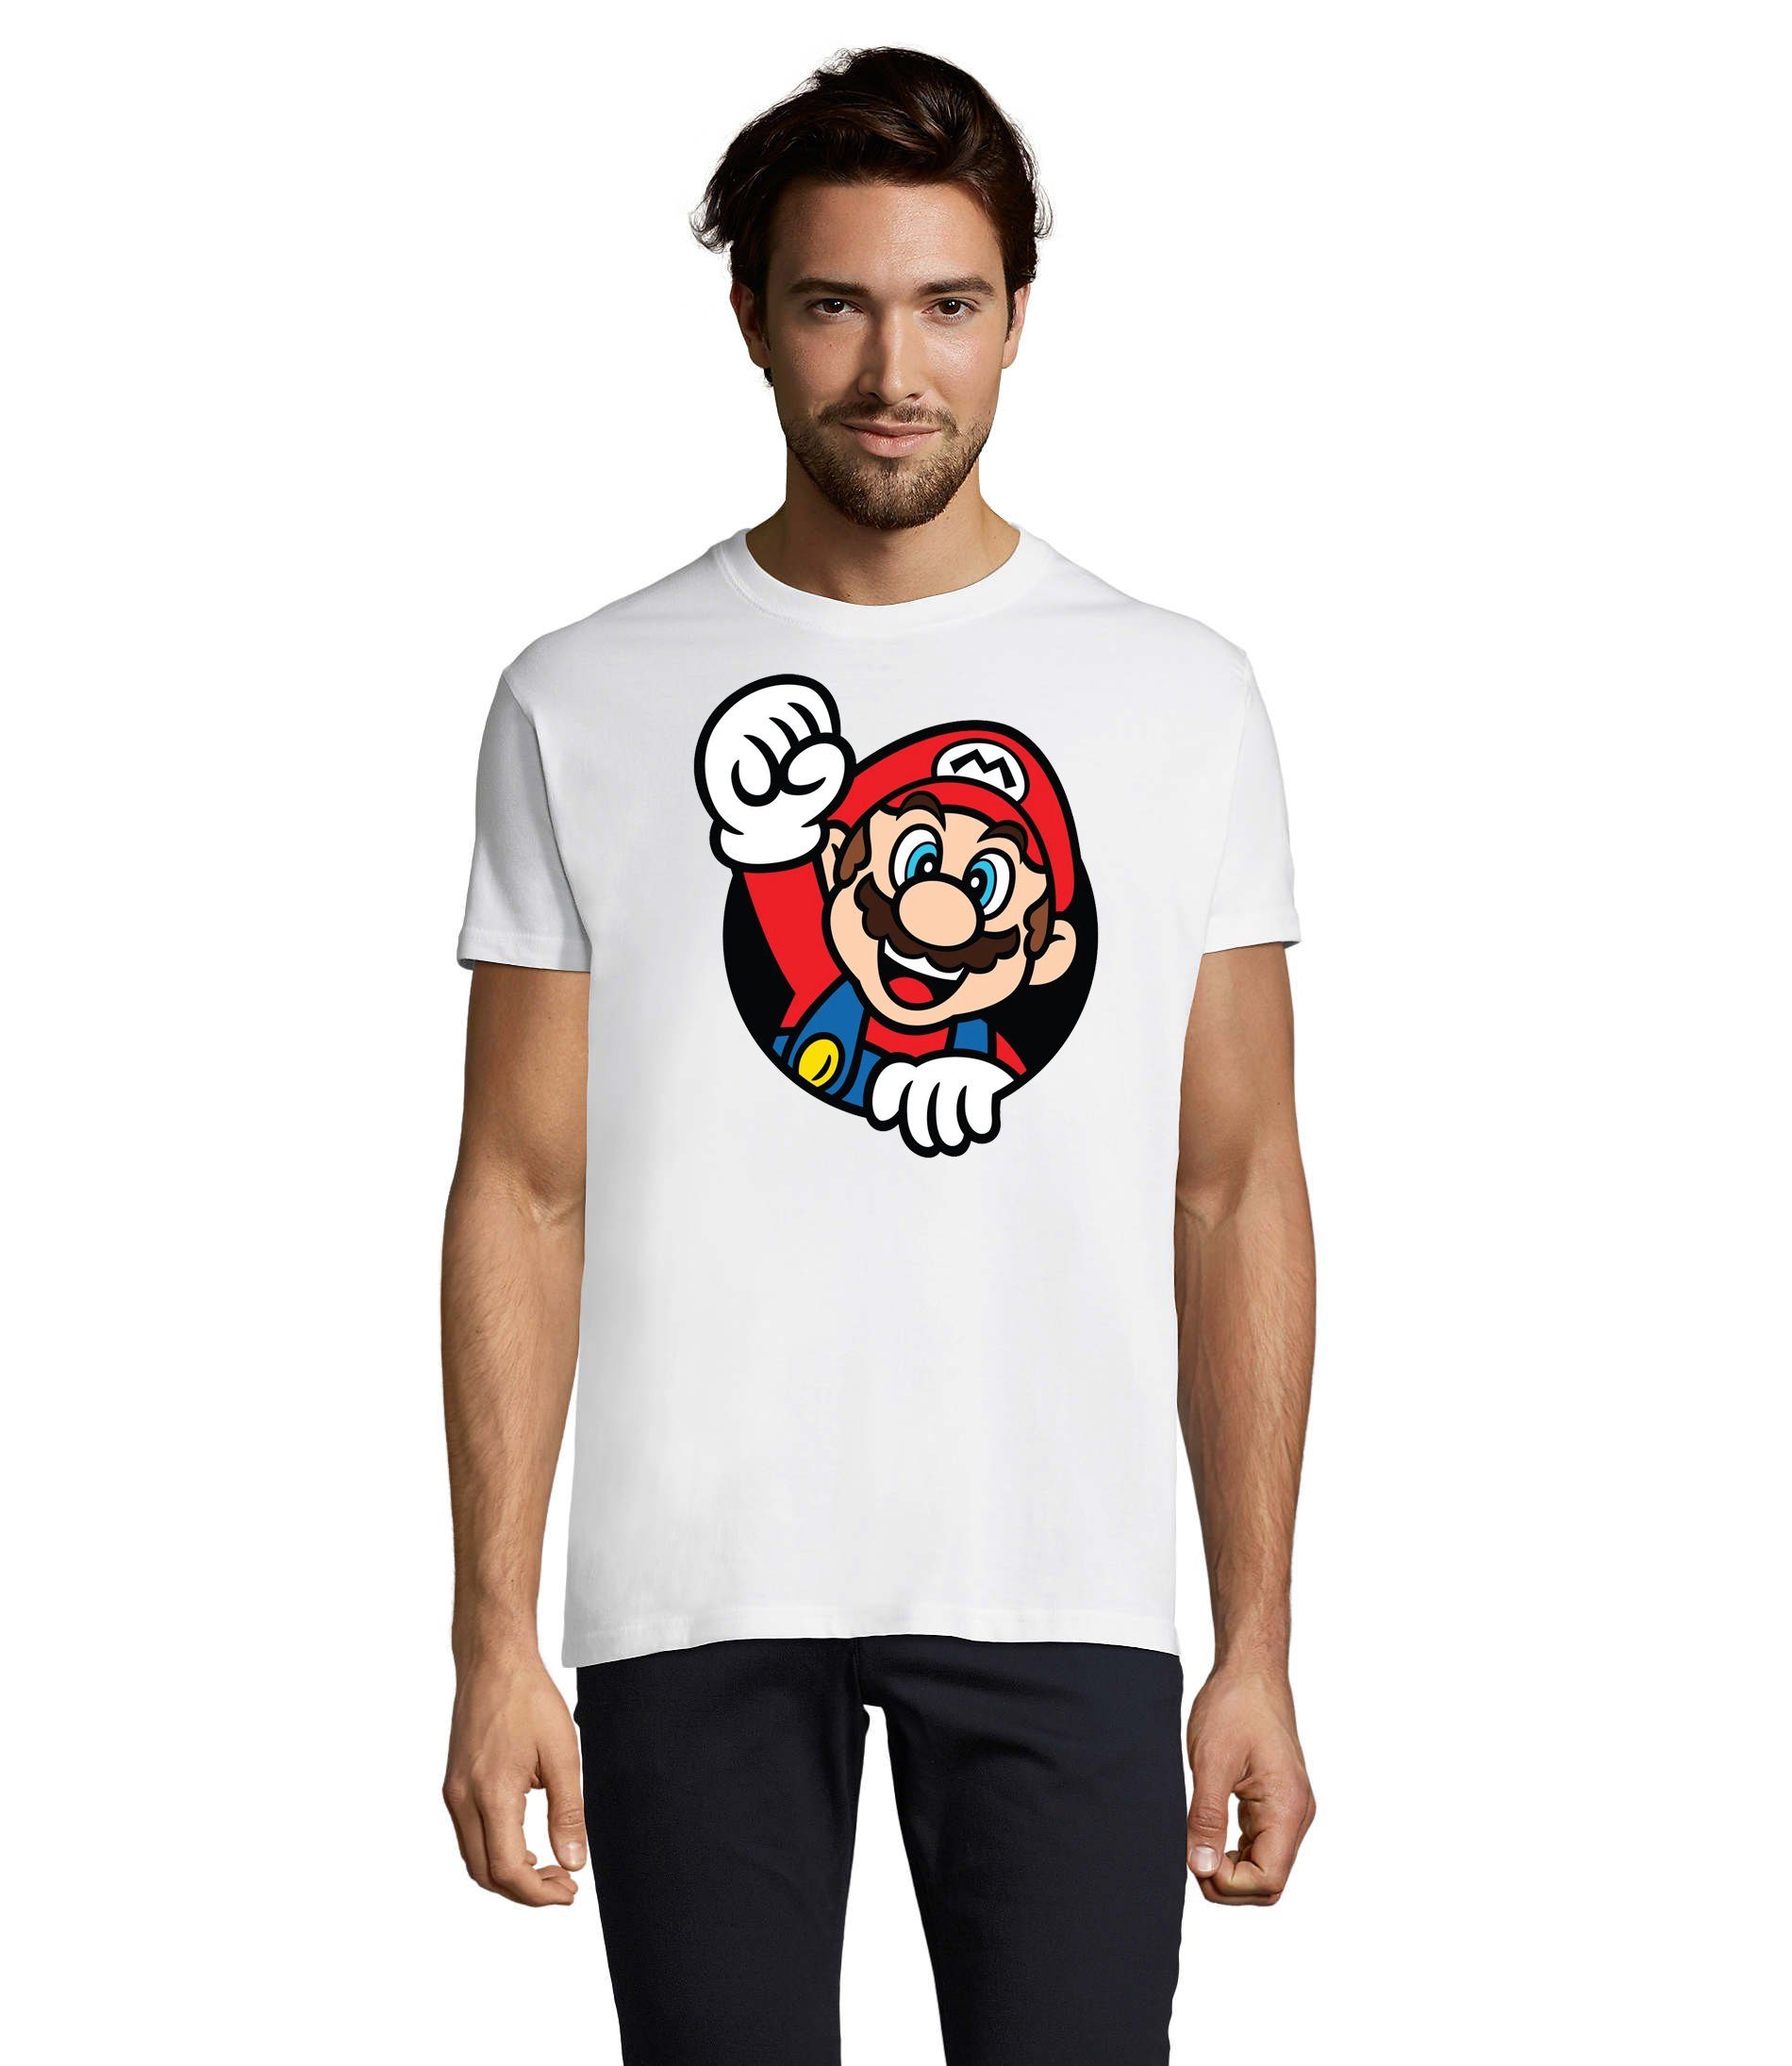 Spiel T-Shirt Super Mario Herren Blondie Nerd Weiss Konsole & Faust Gaming Brownie Nintendo